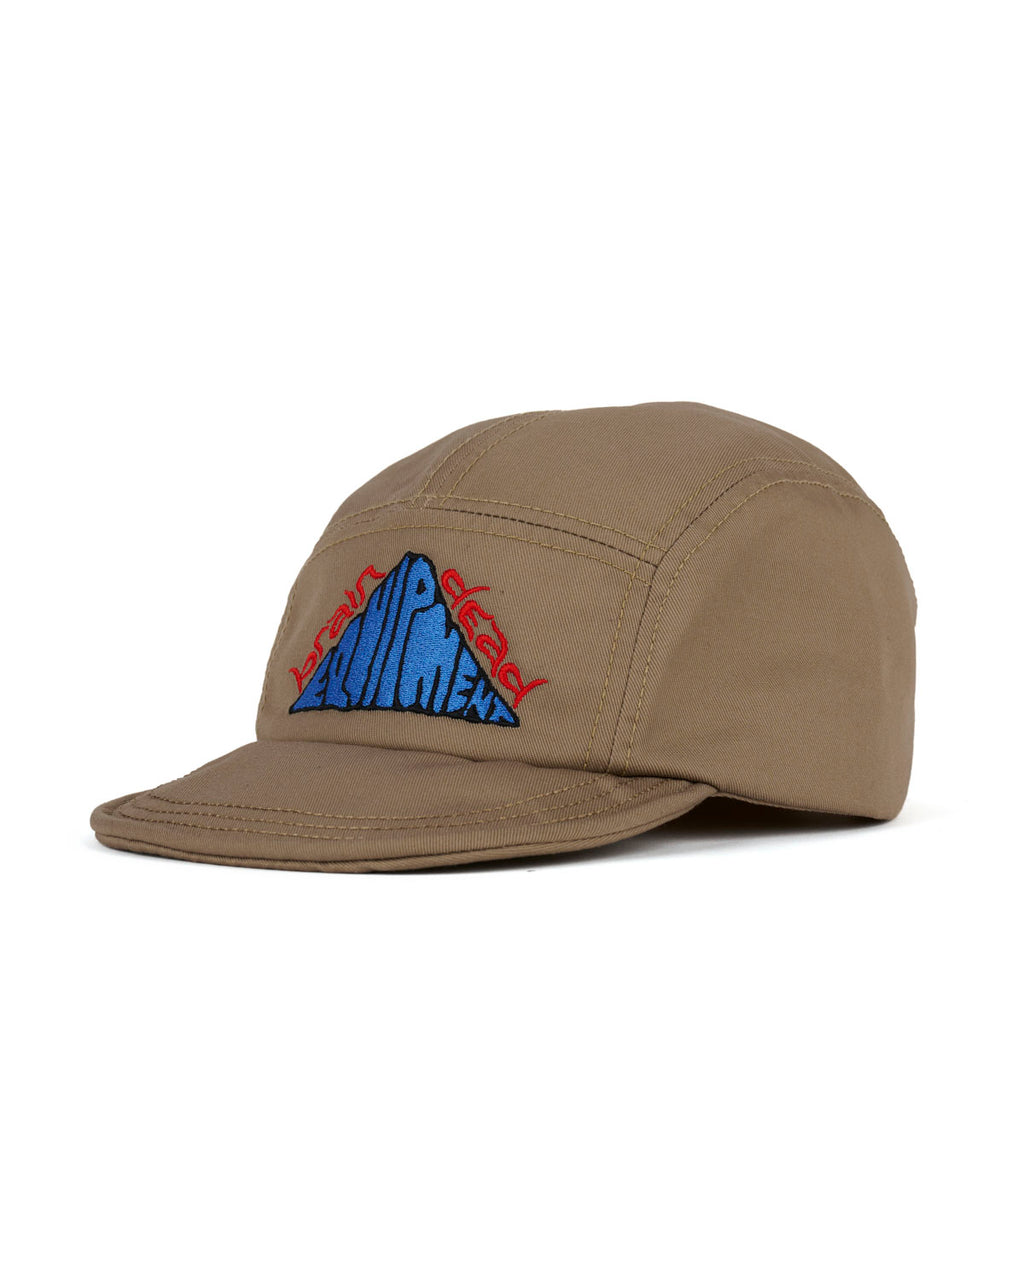 Equipment Short Brim Camp Hat - Khaki 3